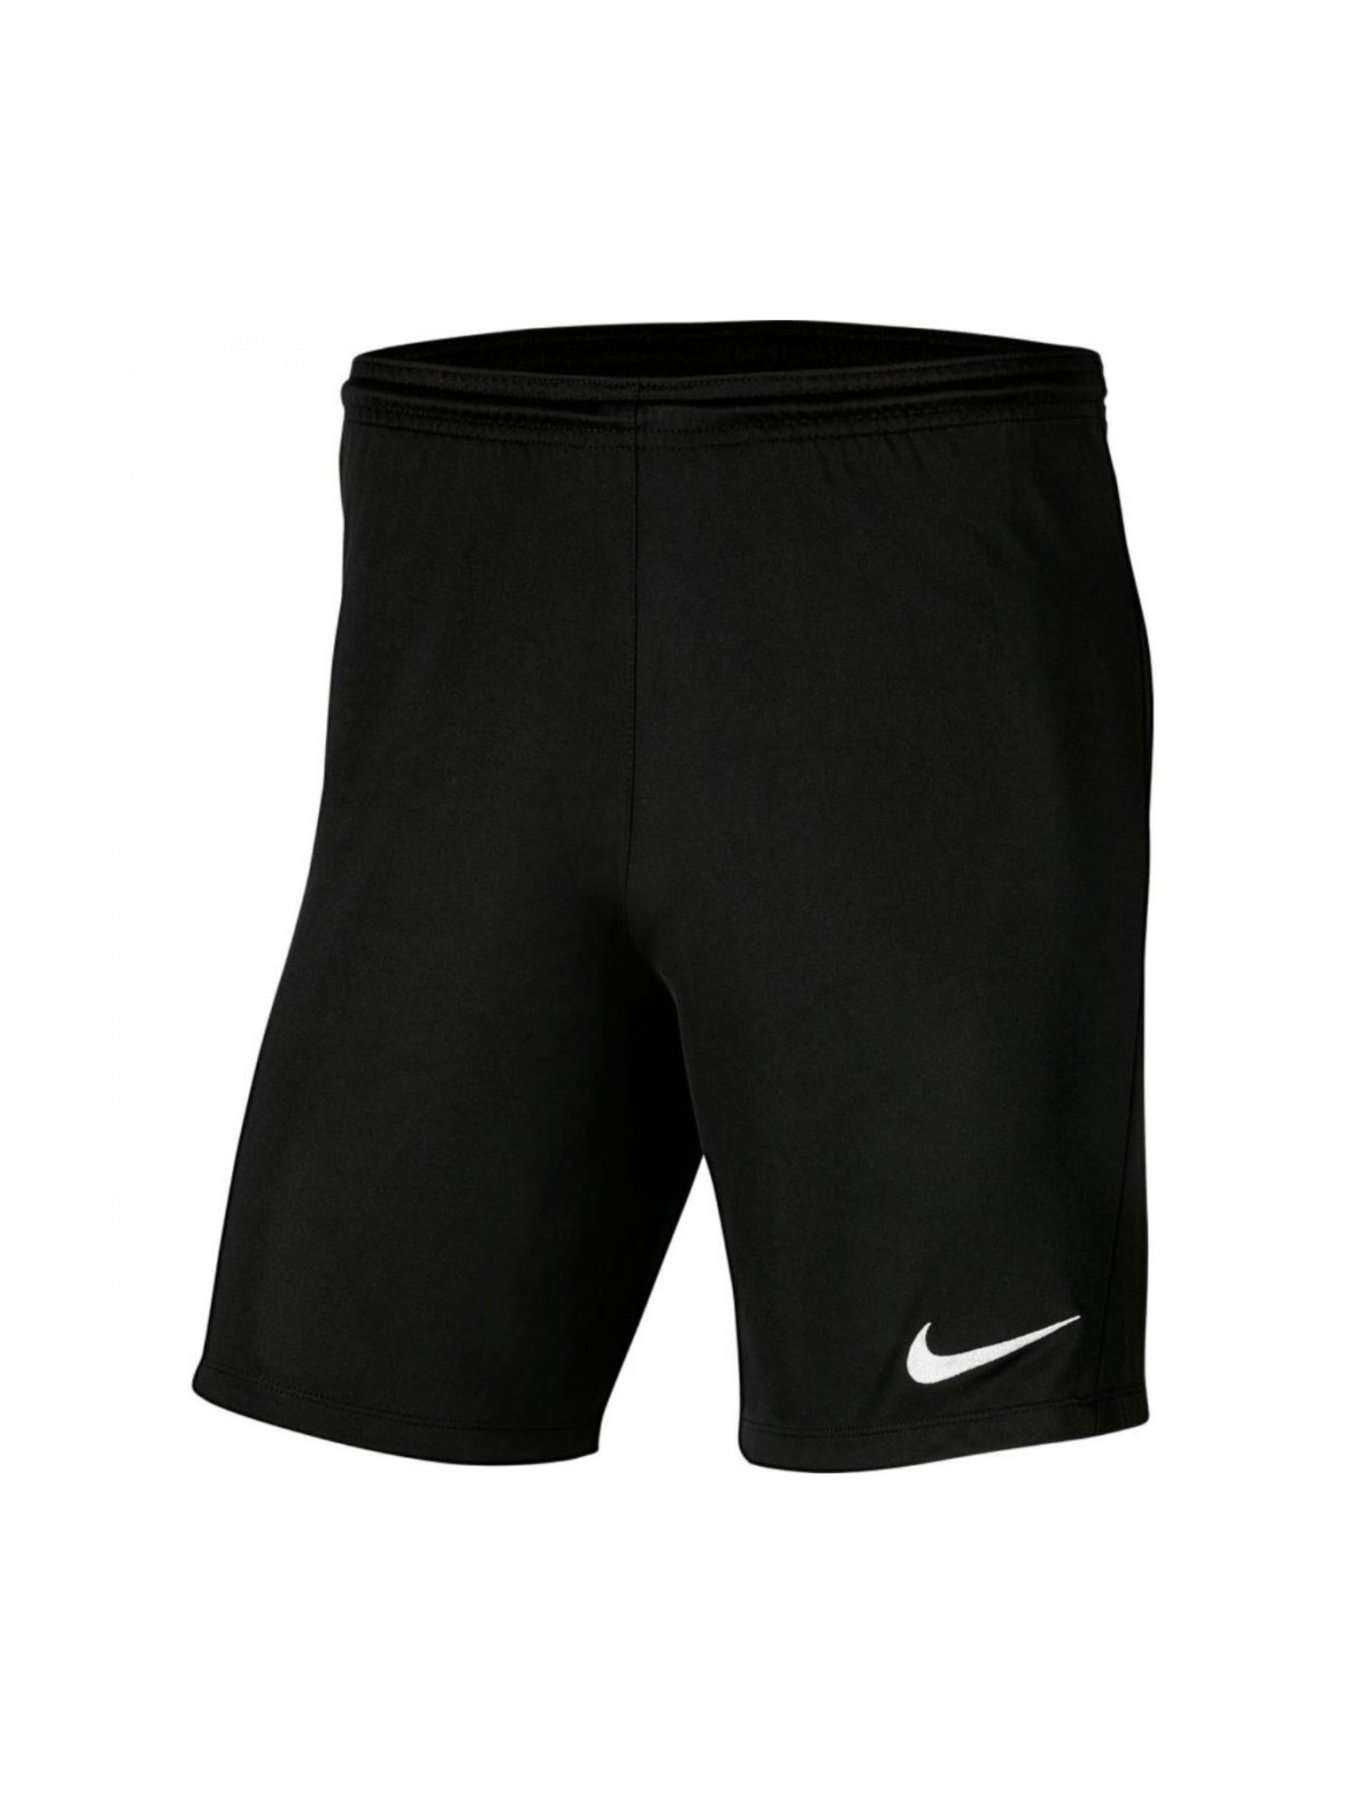 Шорты футбольние Nike Park III Knit Jr купить